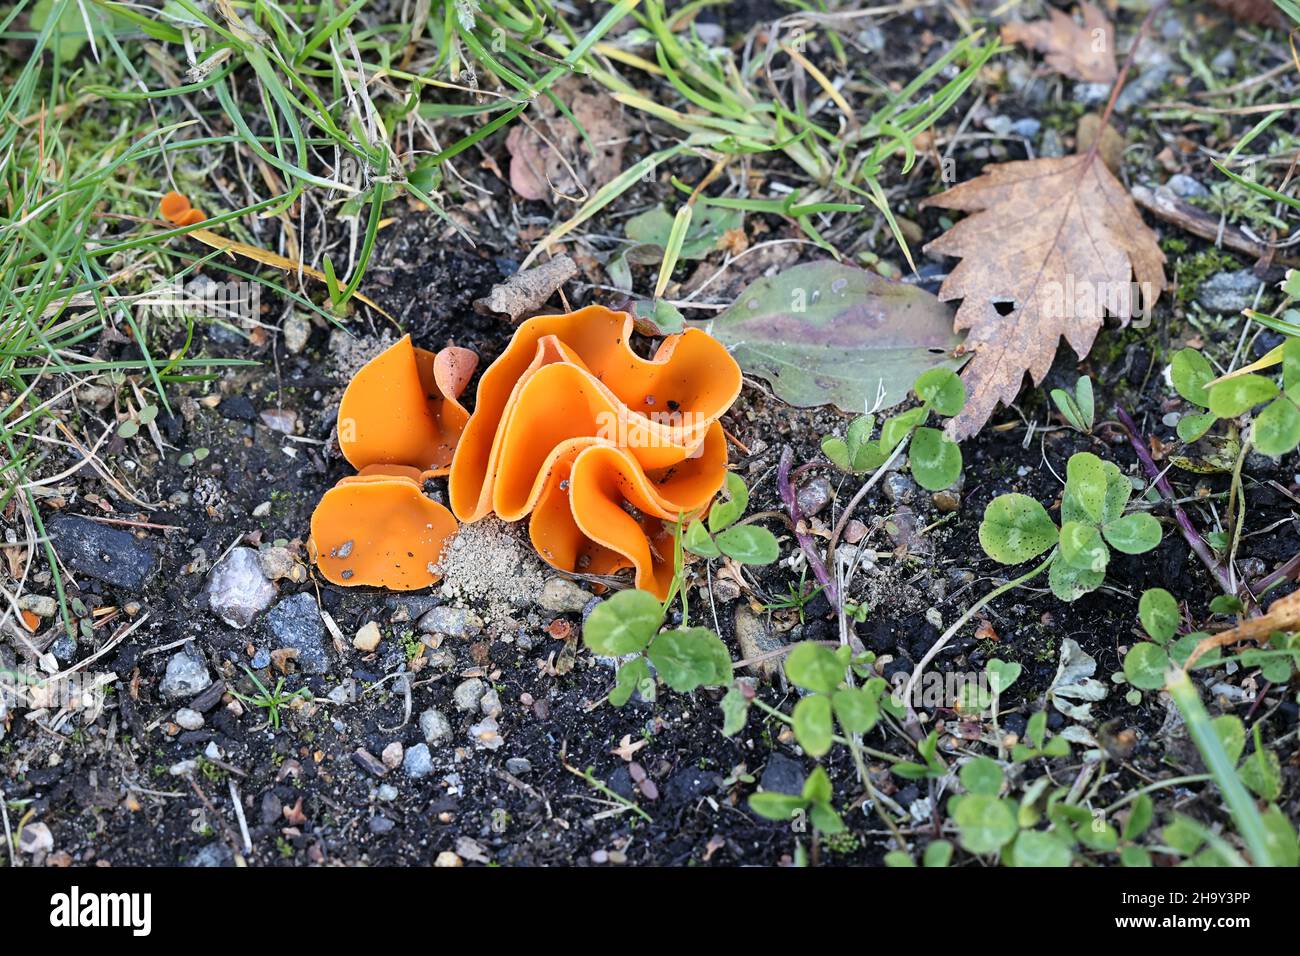 Aleuria aurantia, connue sous le nom de champignon de la coupe à zeste d'orange, champignon sauvage de Finlande Banque D'Images